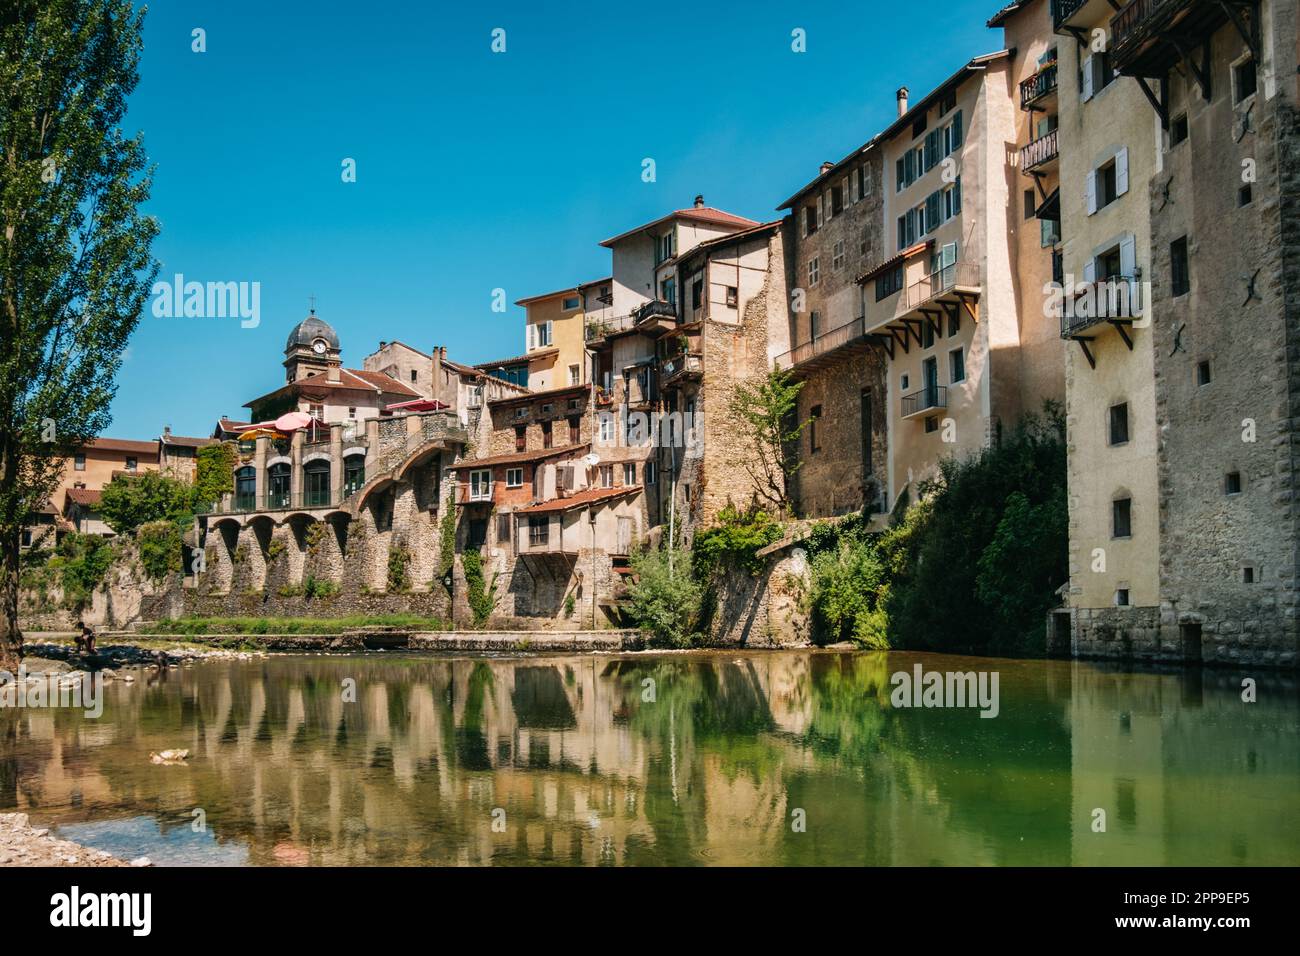 Le village de Pont-en-Royans avec ses maisons suspendues et les eaux bleues de la Bourne dans le Vercors, montagnes des Alpes françaises Banque D'Images